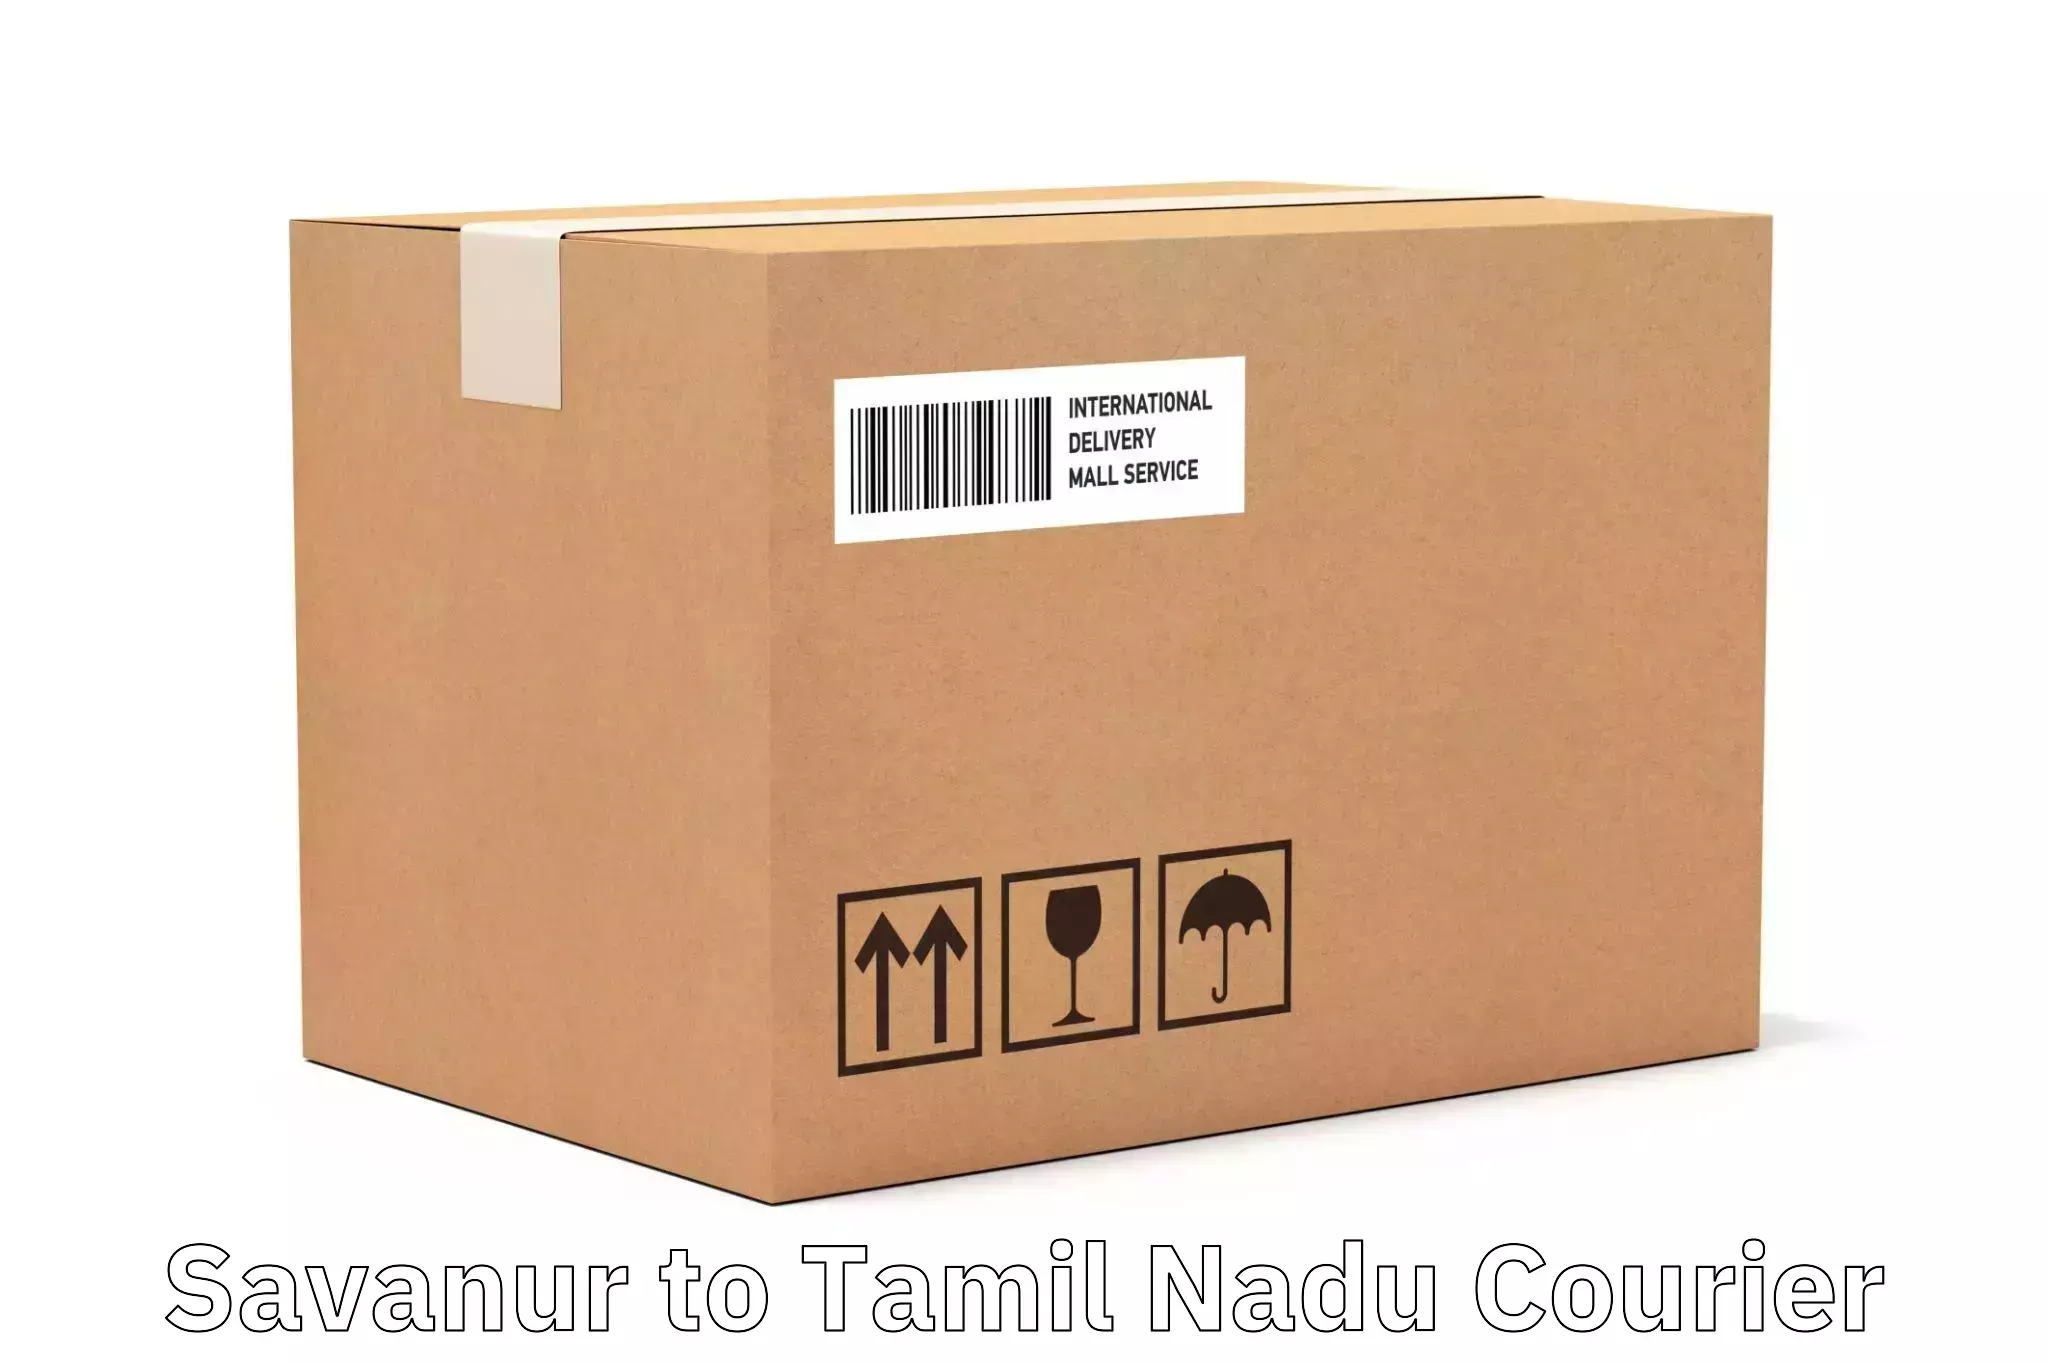 Next-generation courier services Savanur to Thondi